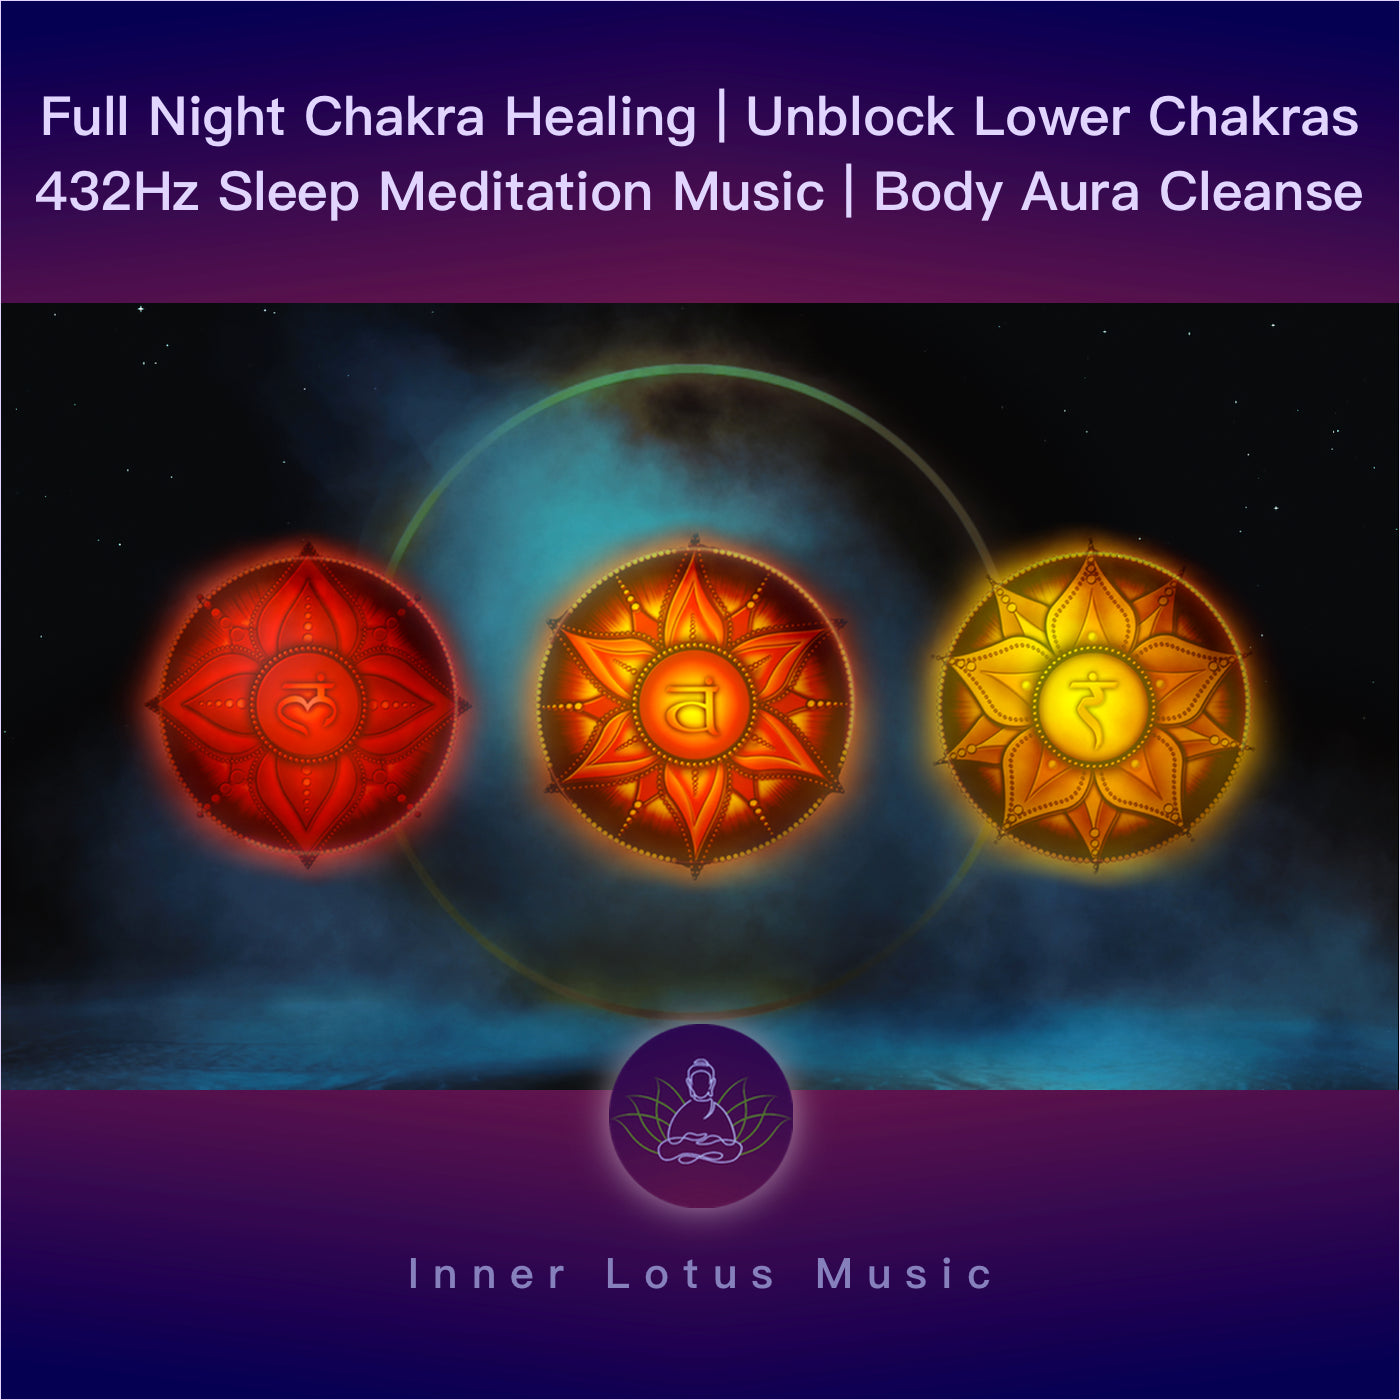 Débloque Tes Chakras Inférieurs | Ouverture & Guérison | Musique 432hz Méditation & Sommeil profond